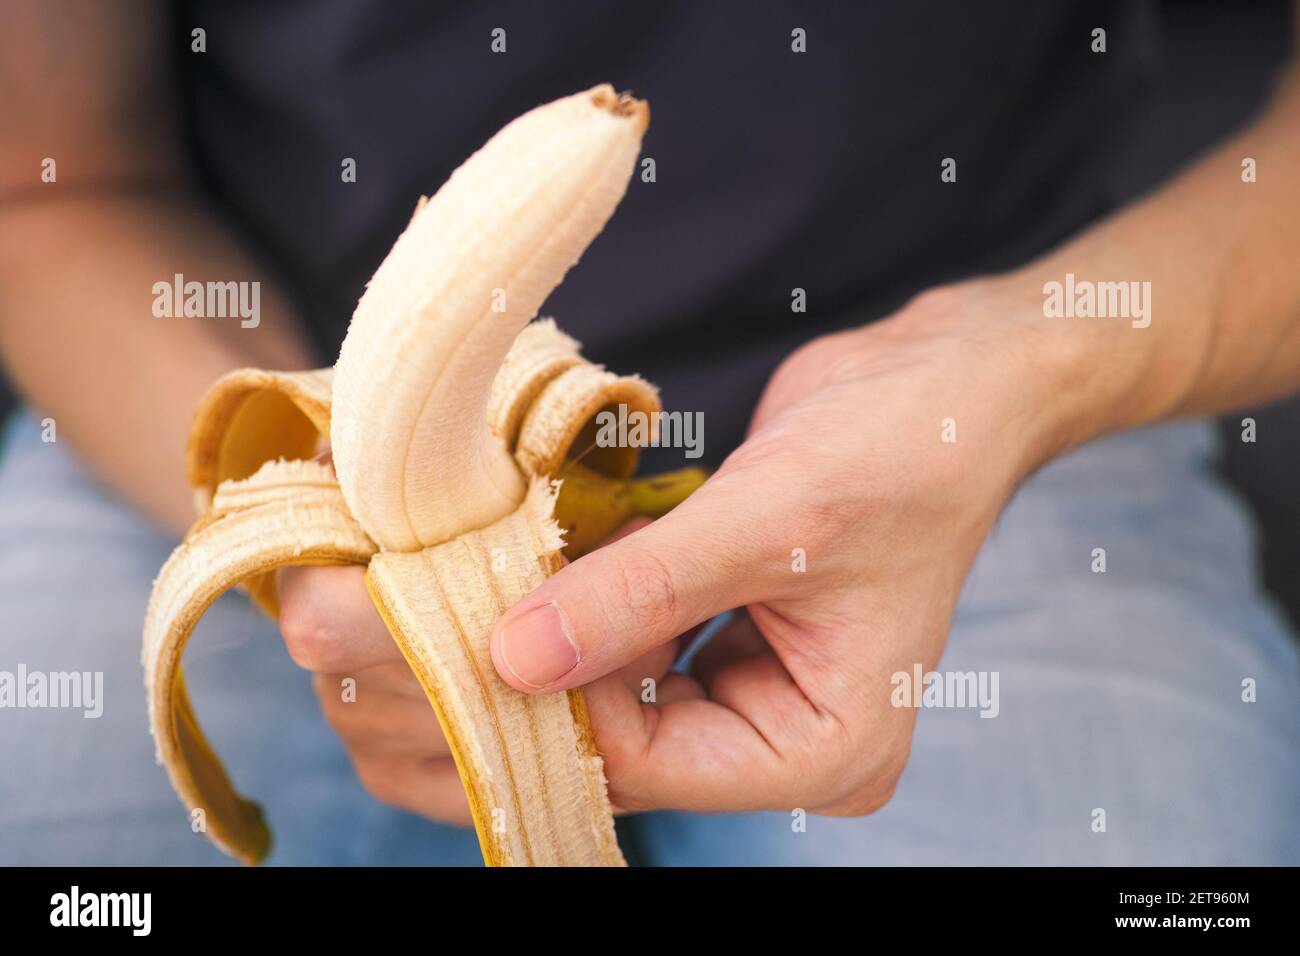 Un uomo che spellano una banana fresca. Profondità di campo poco profonda. Primo piano. Foto Stock